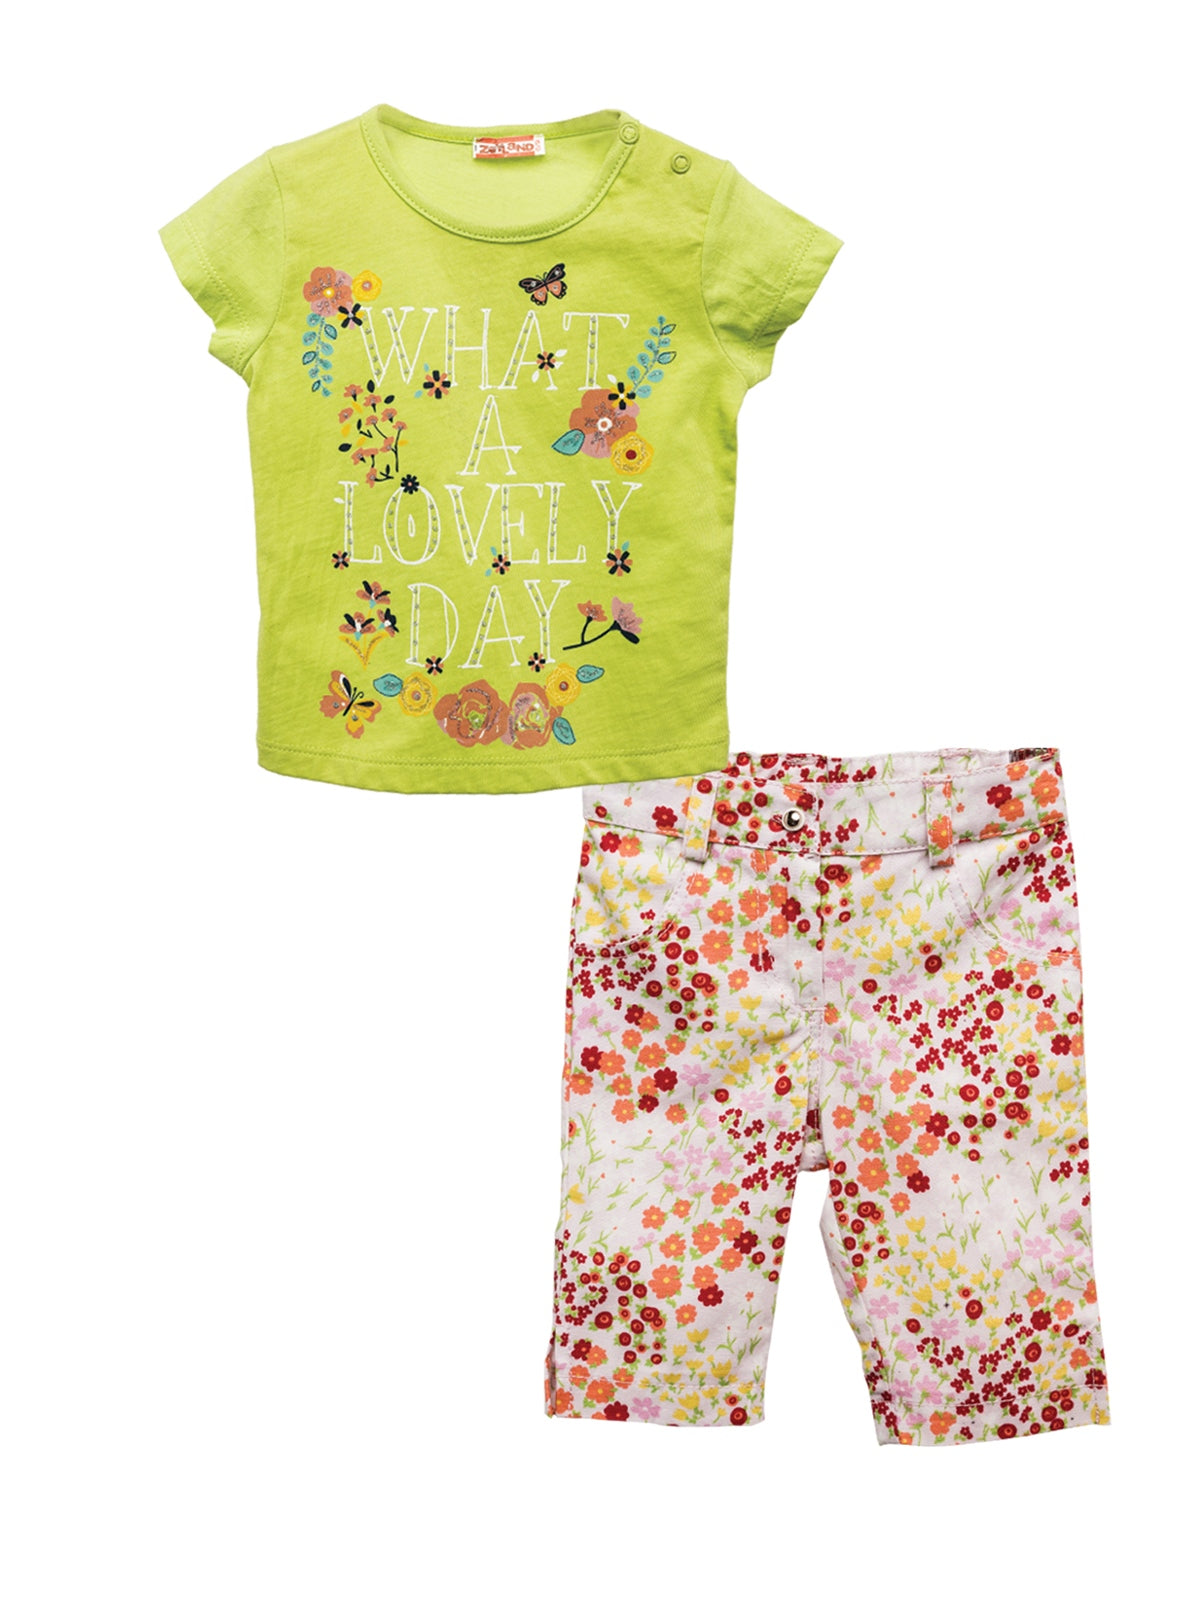 Kız Bebek Yeşil Baskılı T-shirt ve Çiçekli Pantolon Takım (6ay-4yaş)-0